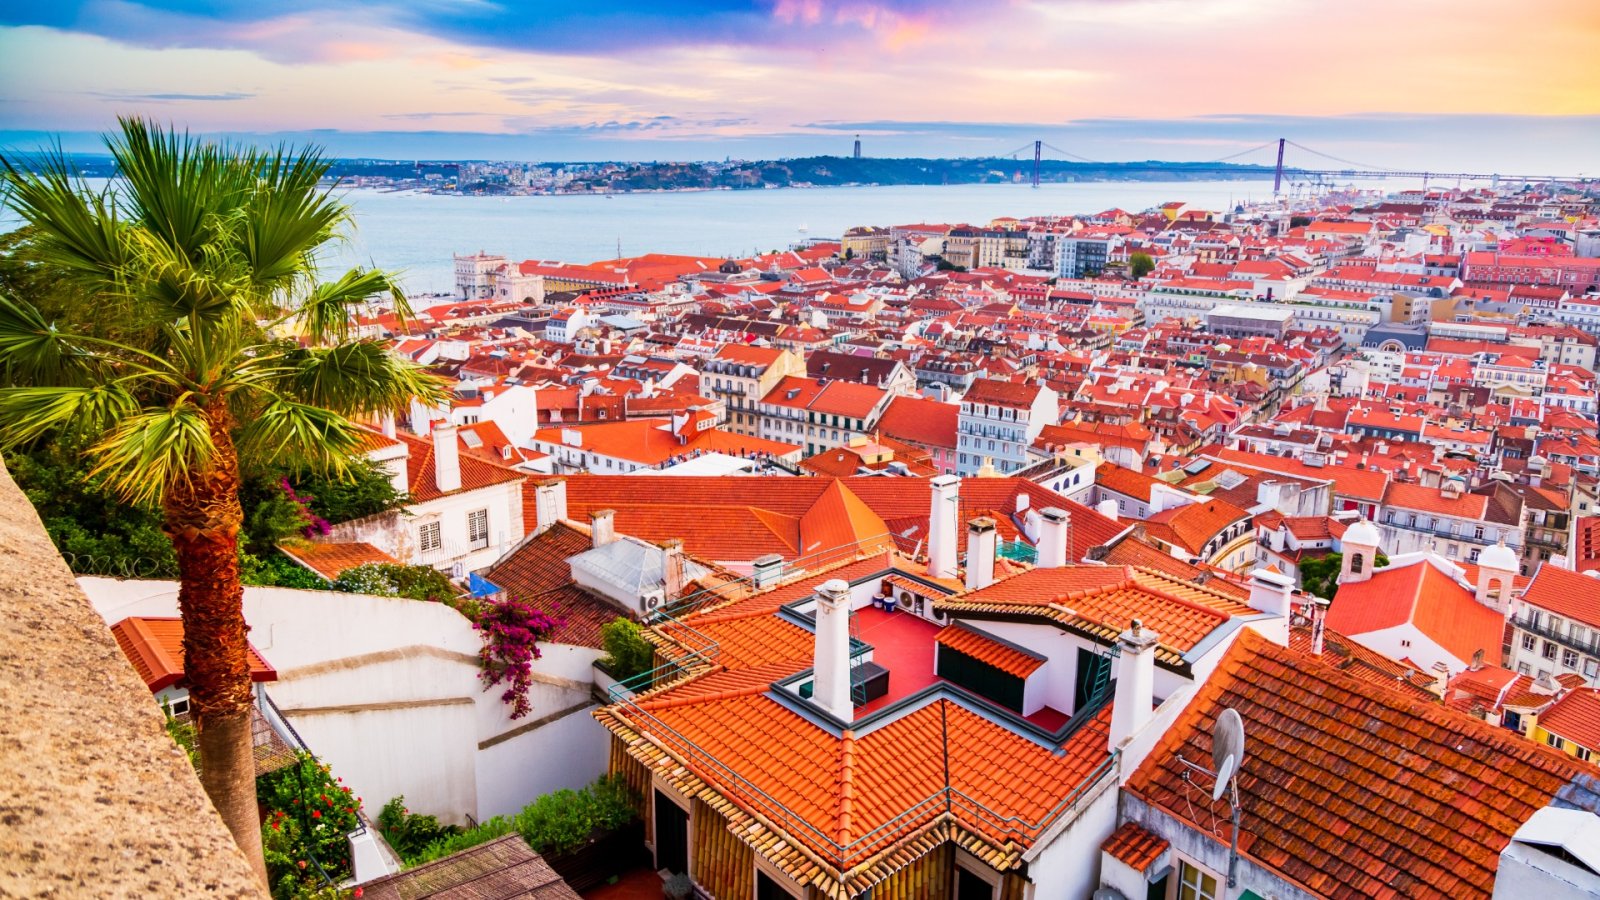 Lissabon: Europas dolda pärla av historia, charm och liv